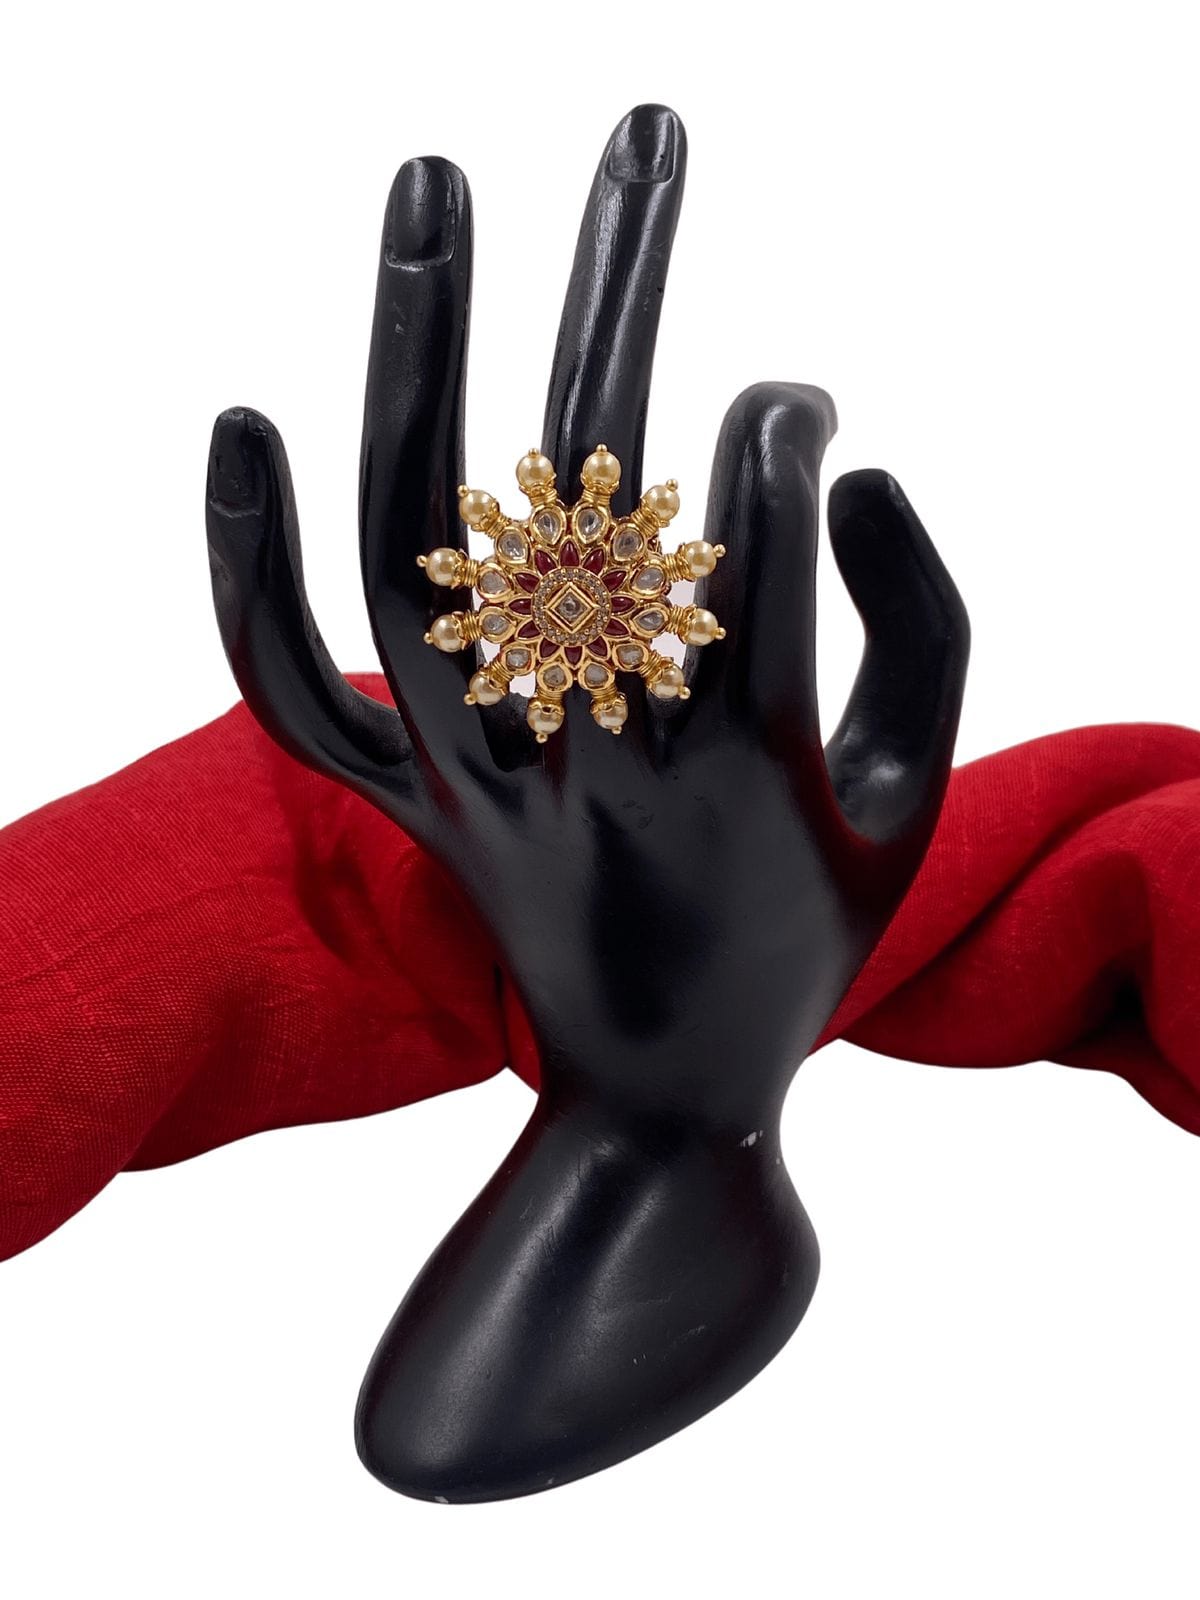 Traditional Adjustable Rotating Designer Finger Ring For Brides By Gehna Shop Finger rings